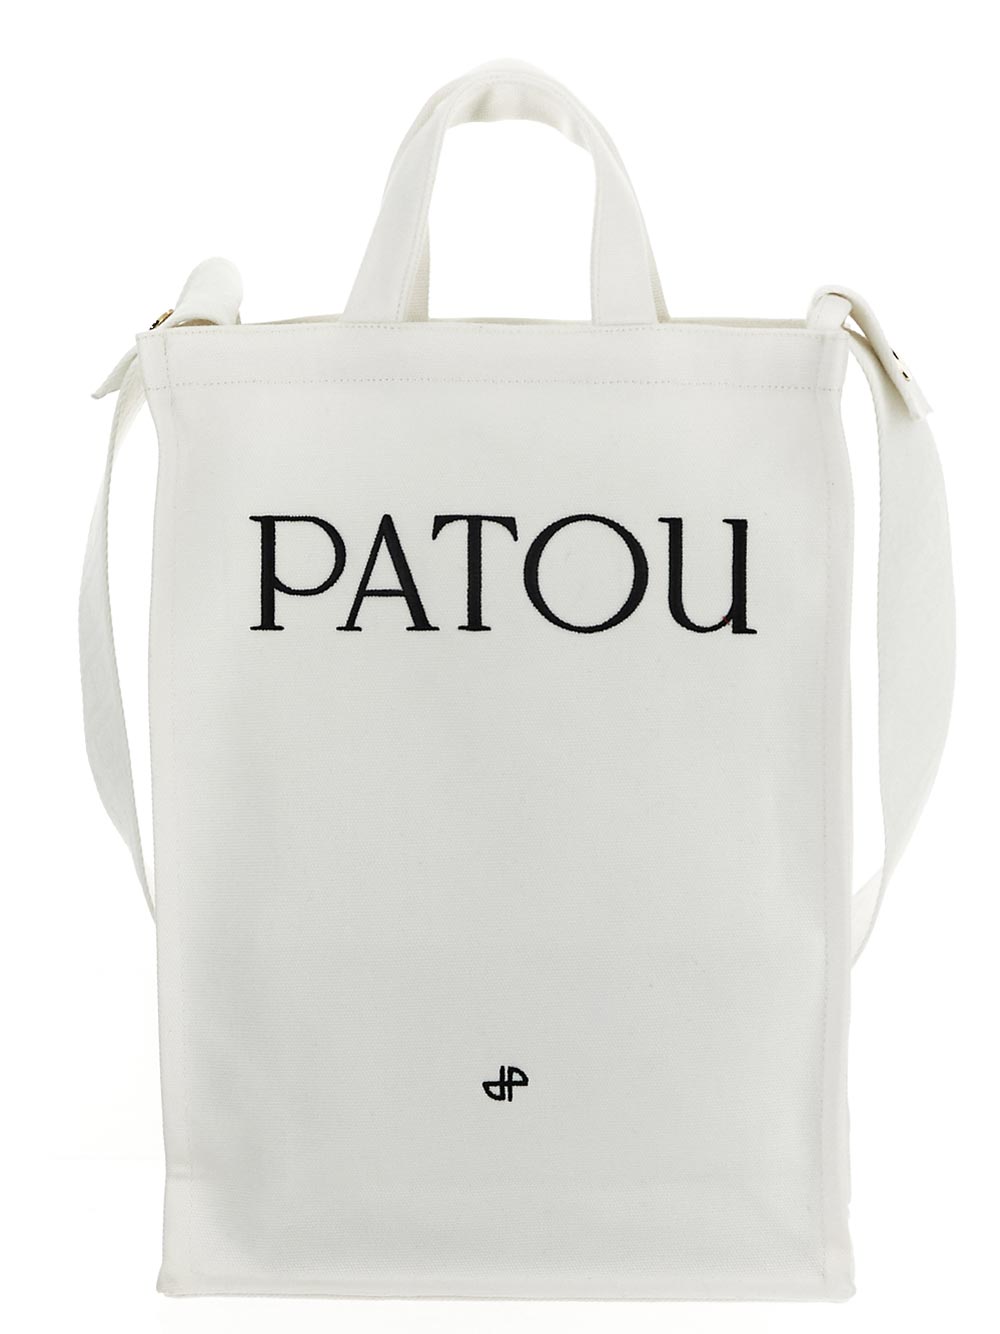 Patou PATOU Shoulder Bags White AC0620076001W